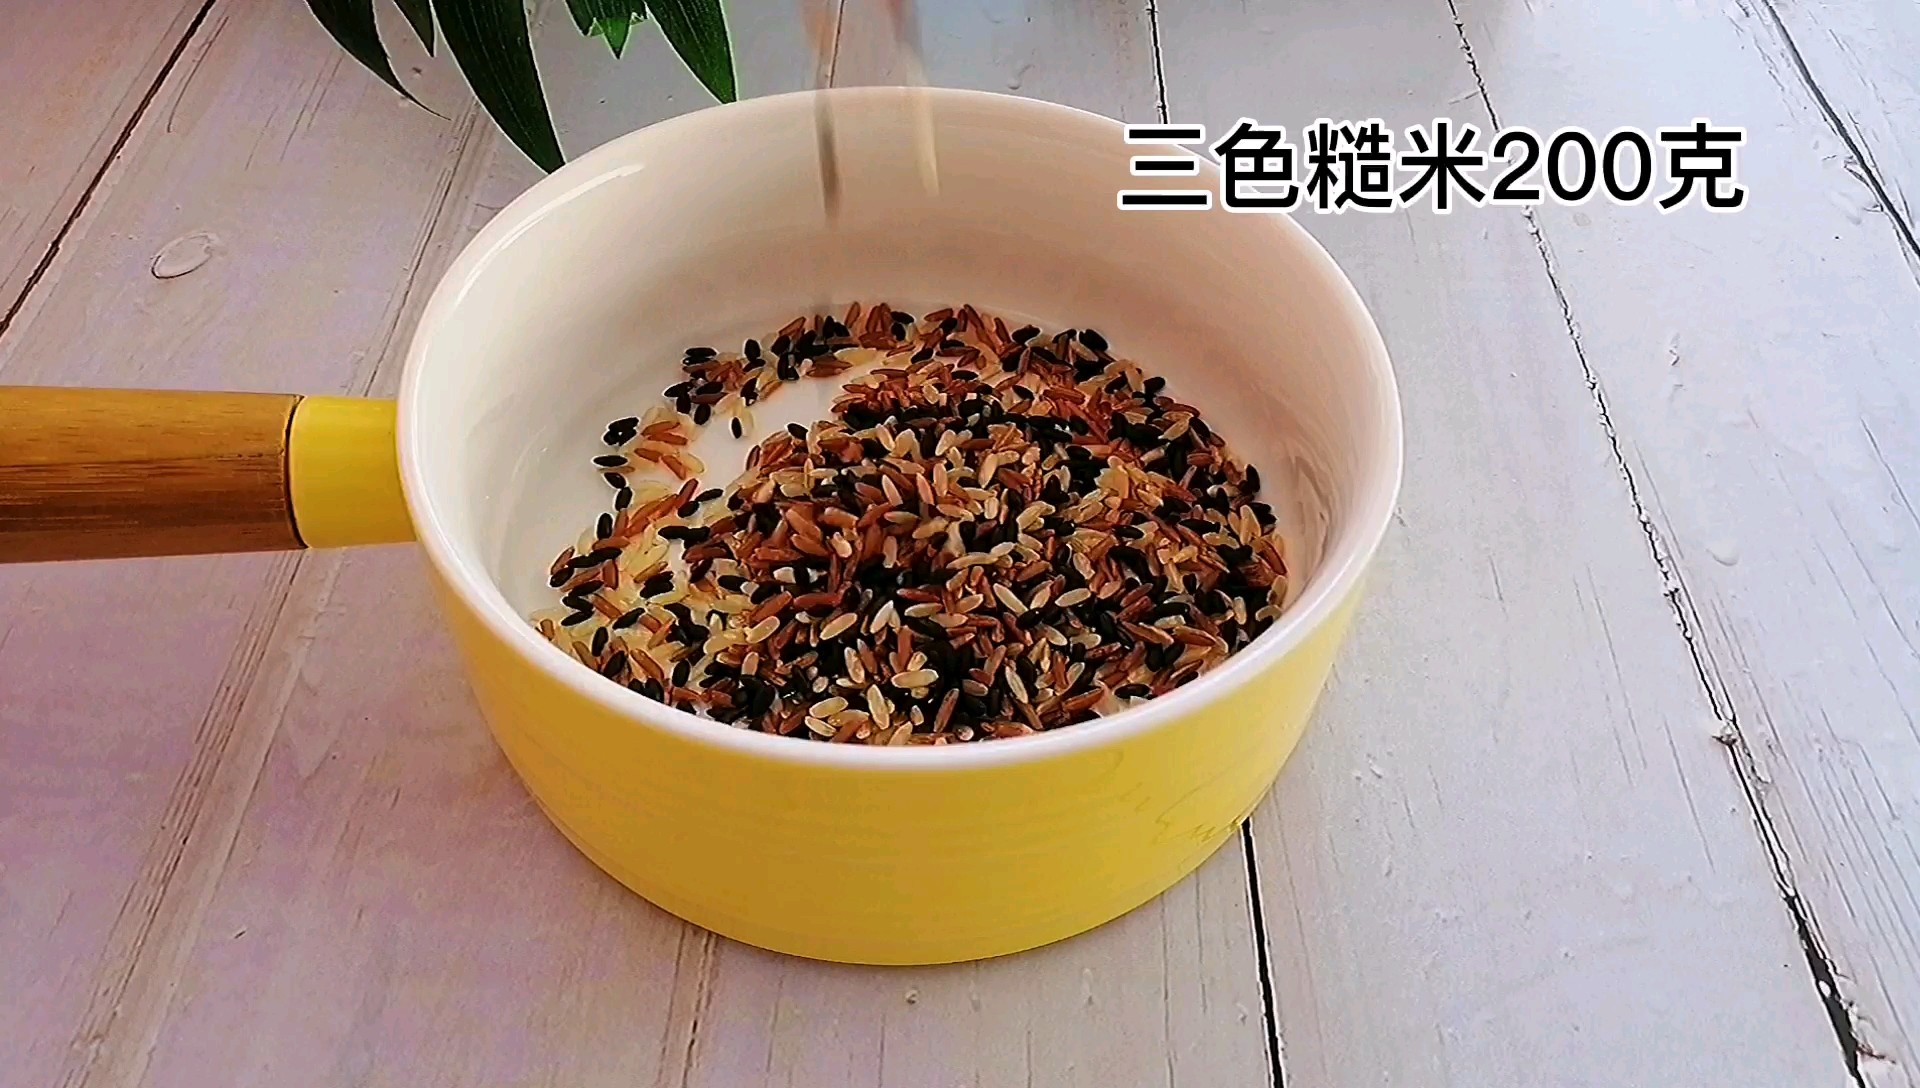 White Jade Mushroom Claypot Rice recipe